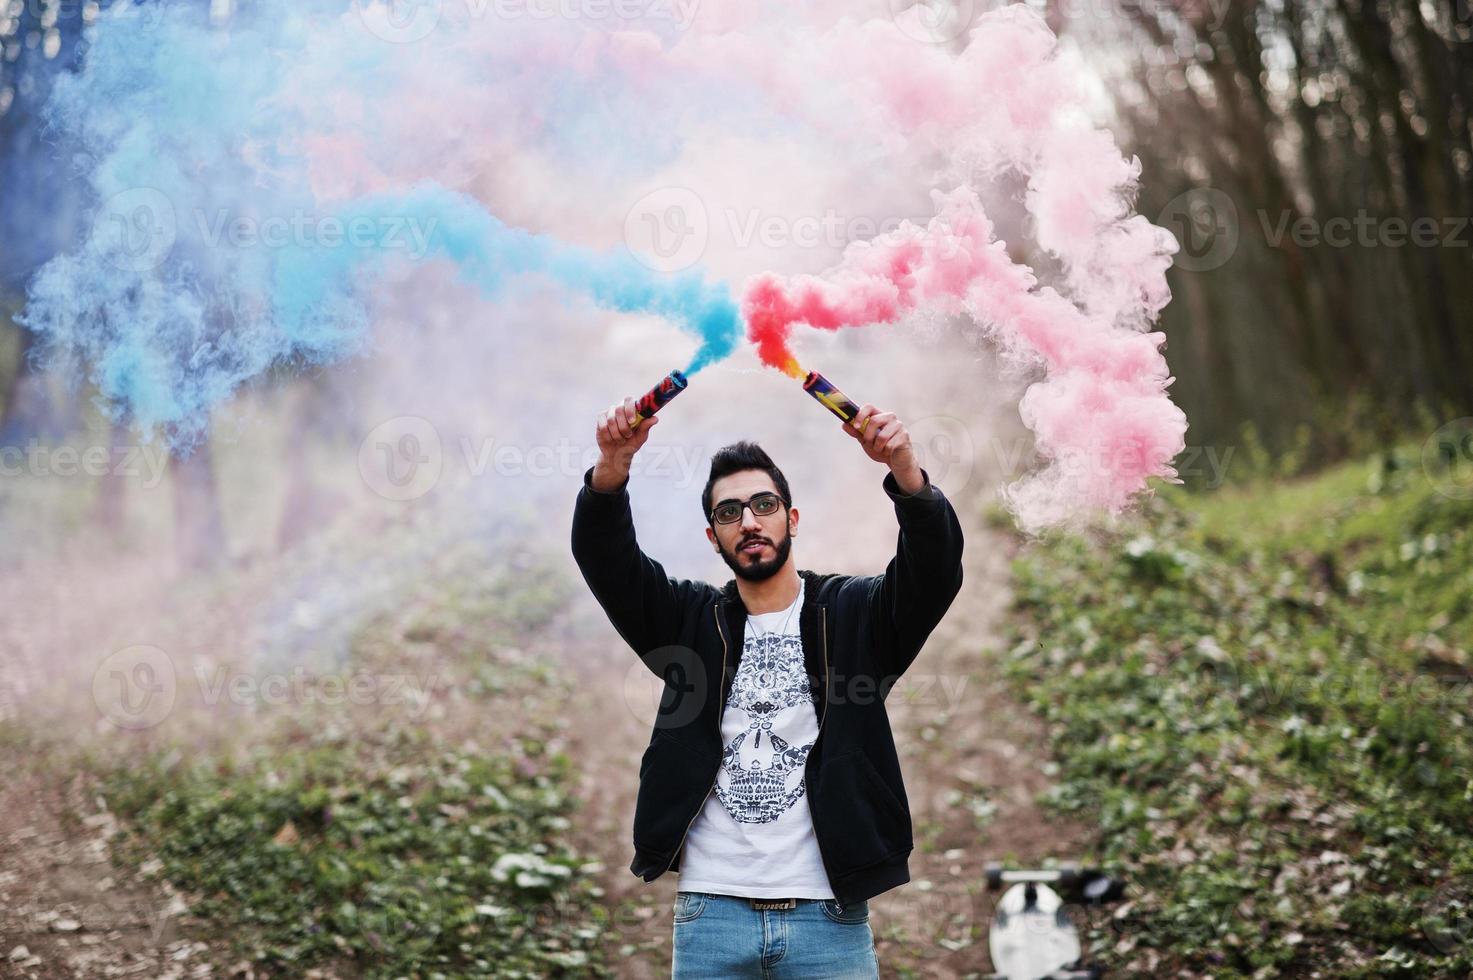 straatstijl arabische man met bril houdt handflare vast met rode en blauwe rookgranaatbom. foto